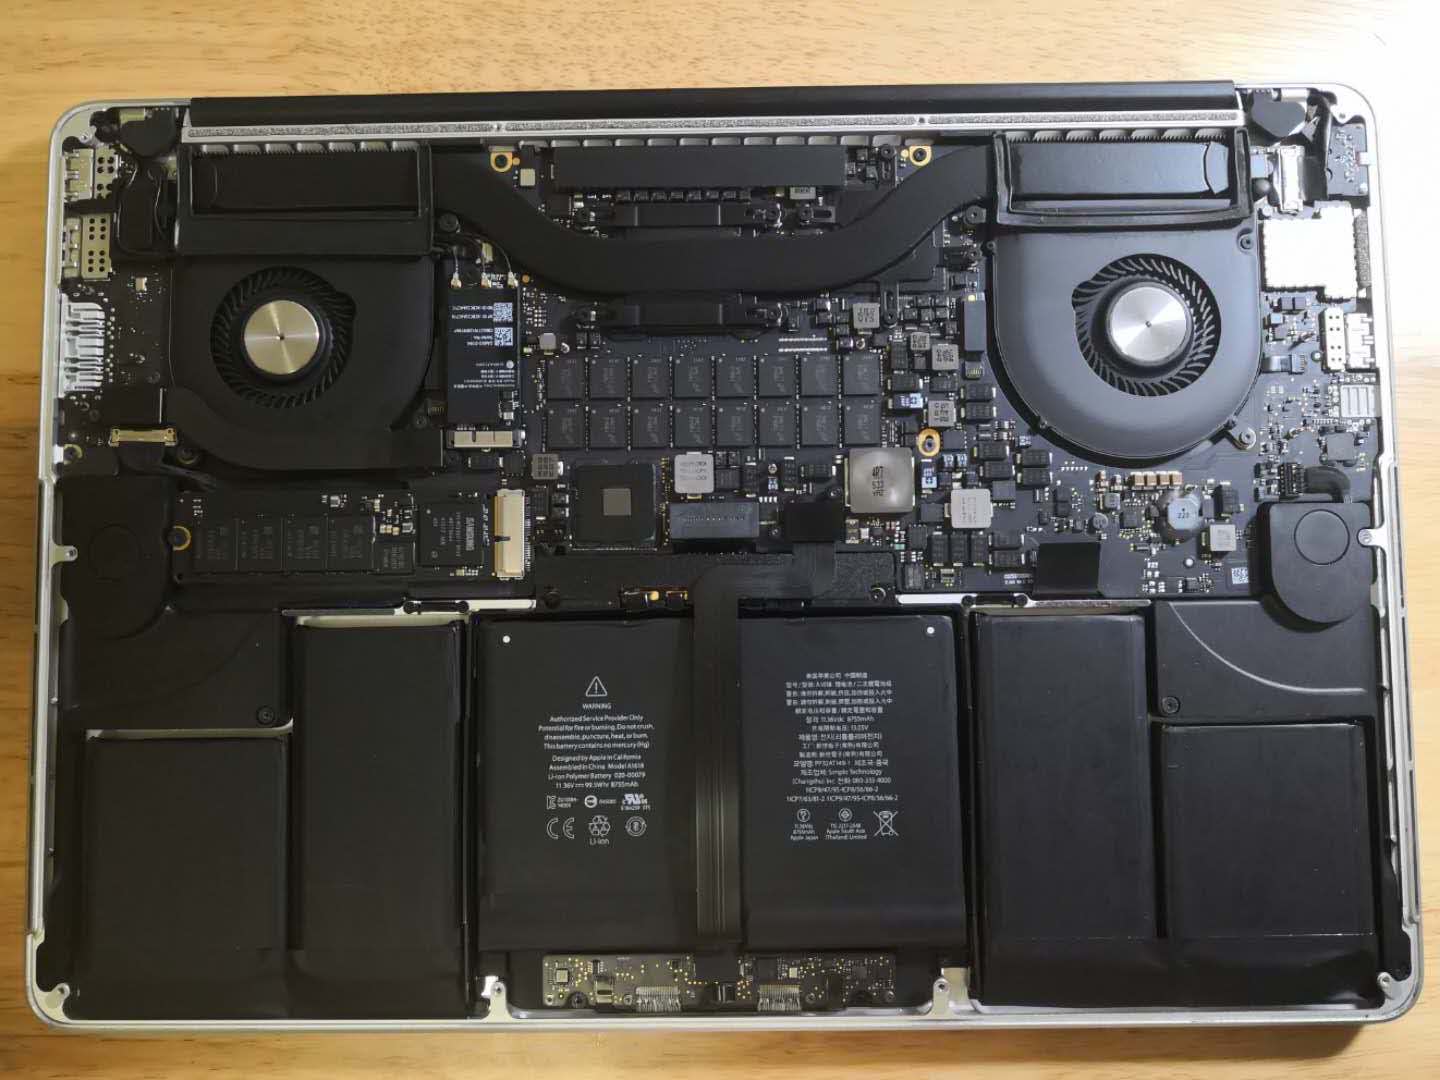 Macbook Pro 键盘触摸板失灵 只有电源键有反应修复手札 O0松鼠0o 博客园